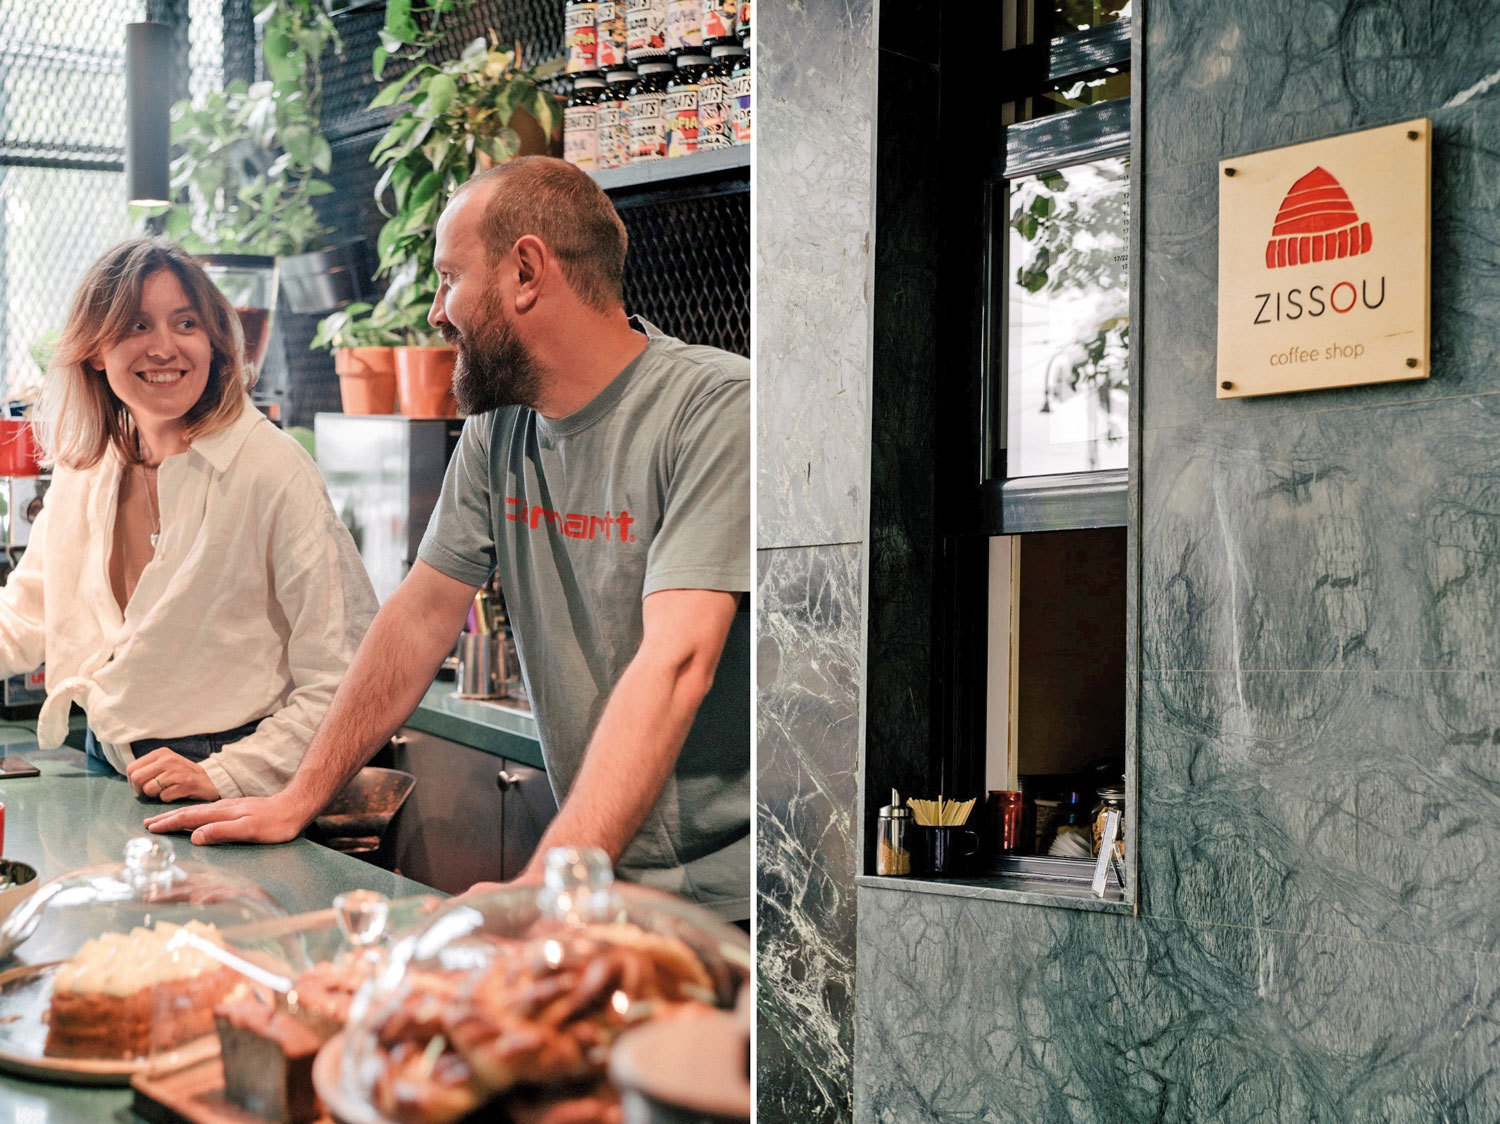 Care este legătura dintre Wes Anderson şi una dintre cele mai cunoscute cafenele de specialitate din Bucureşti?